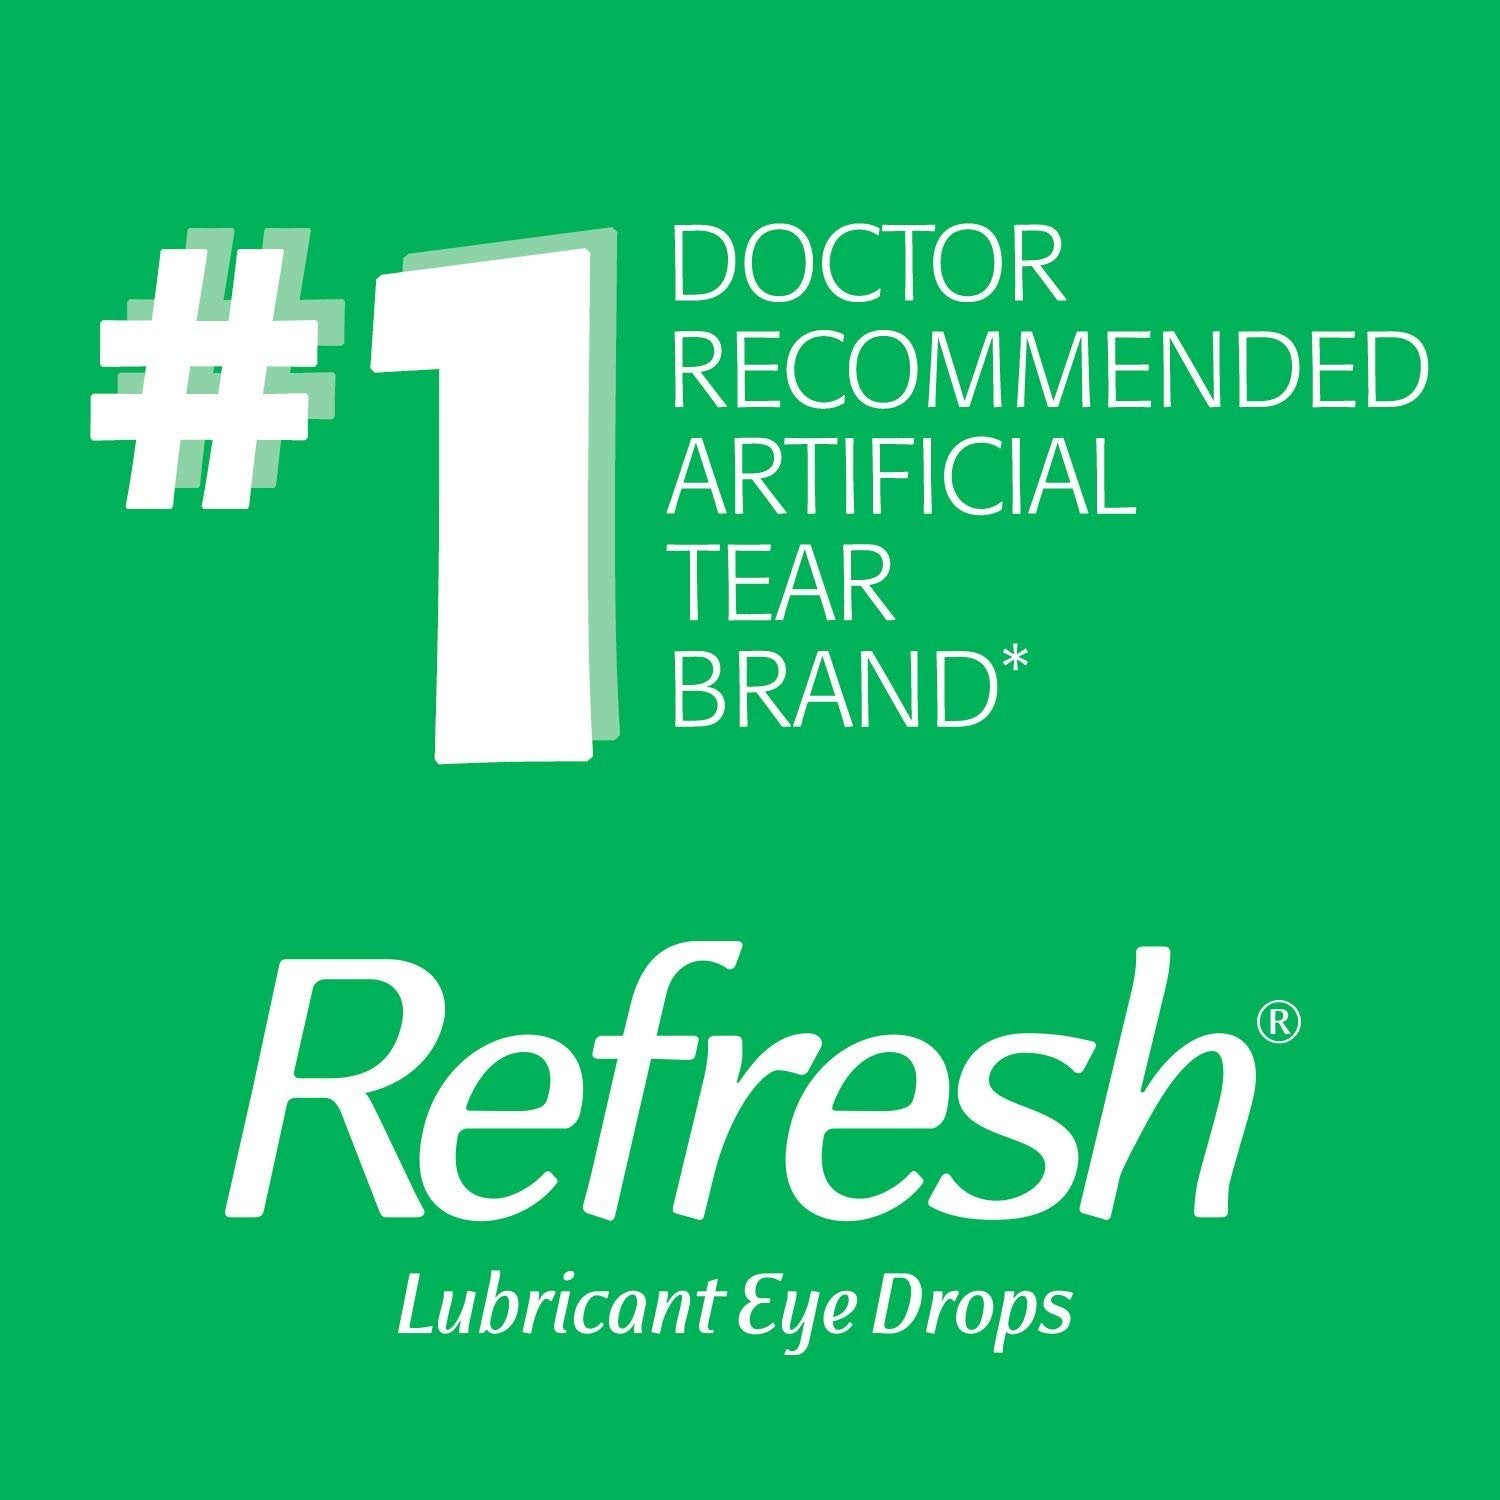 REFRESH TEARS Lubricant Eye Drops 0.50 oz